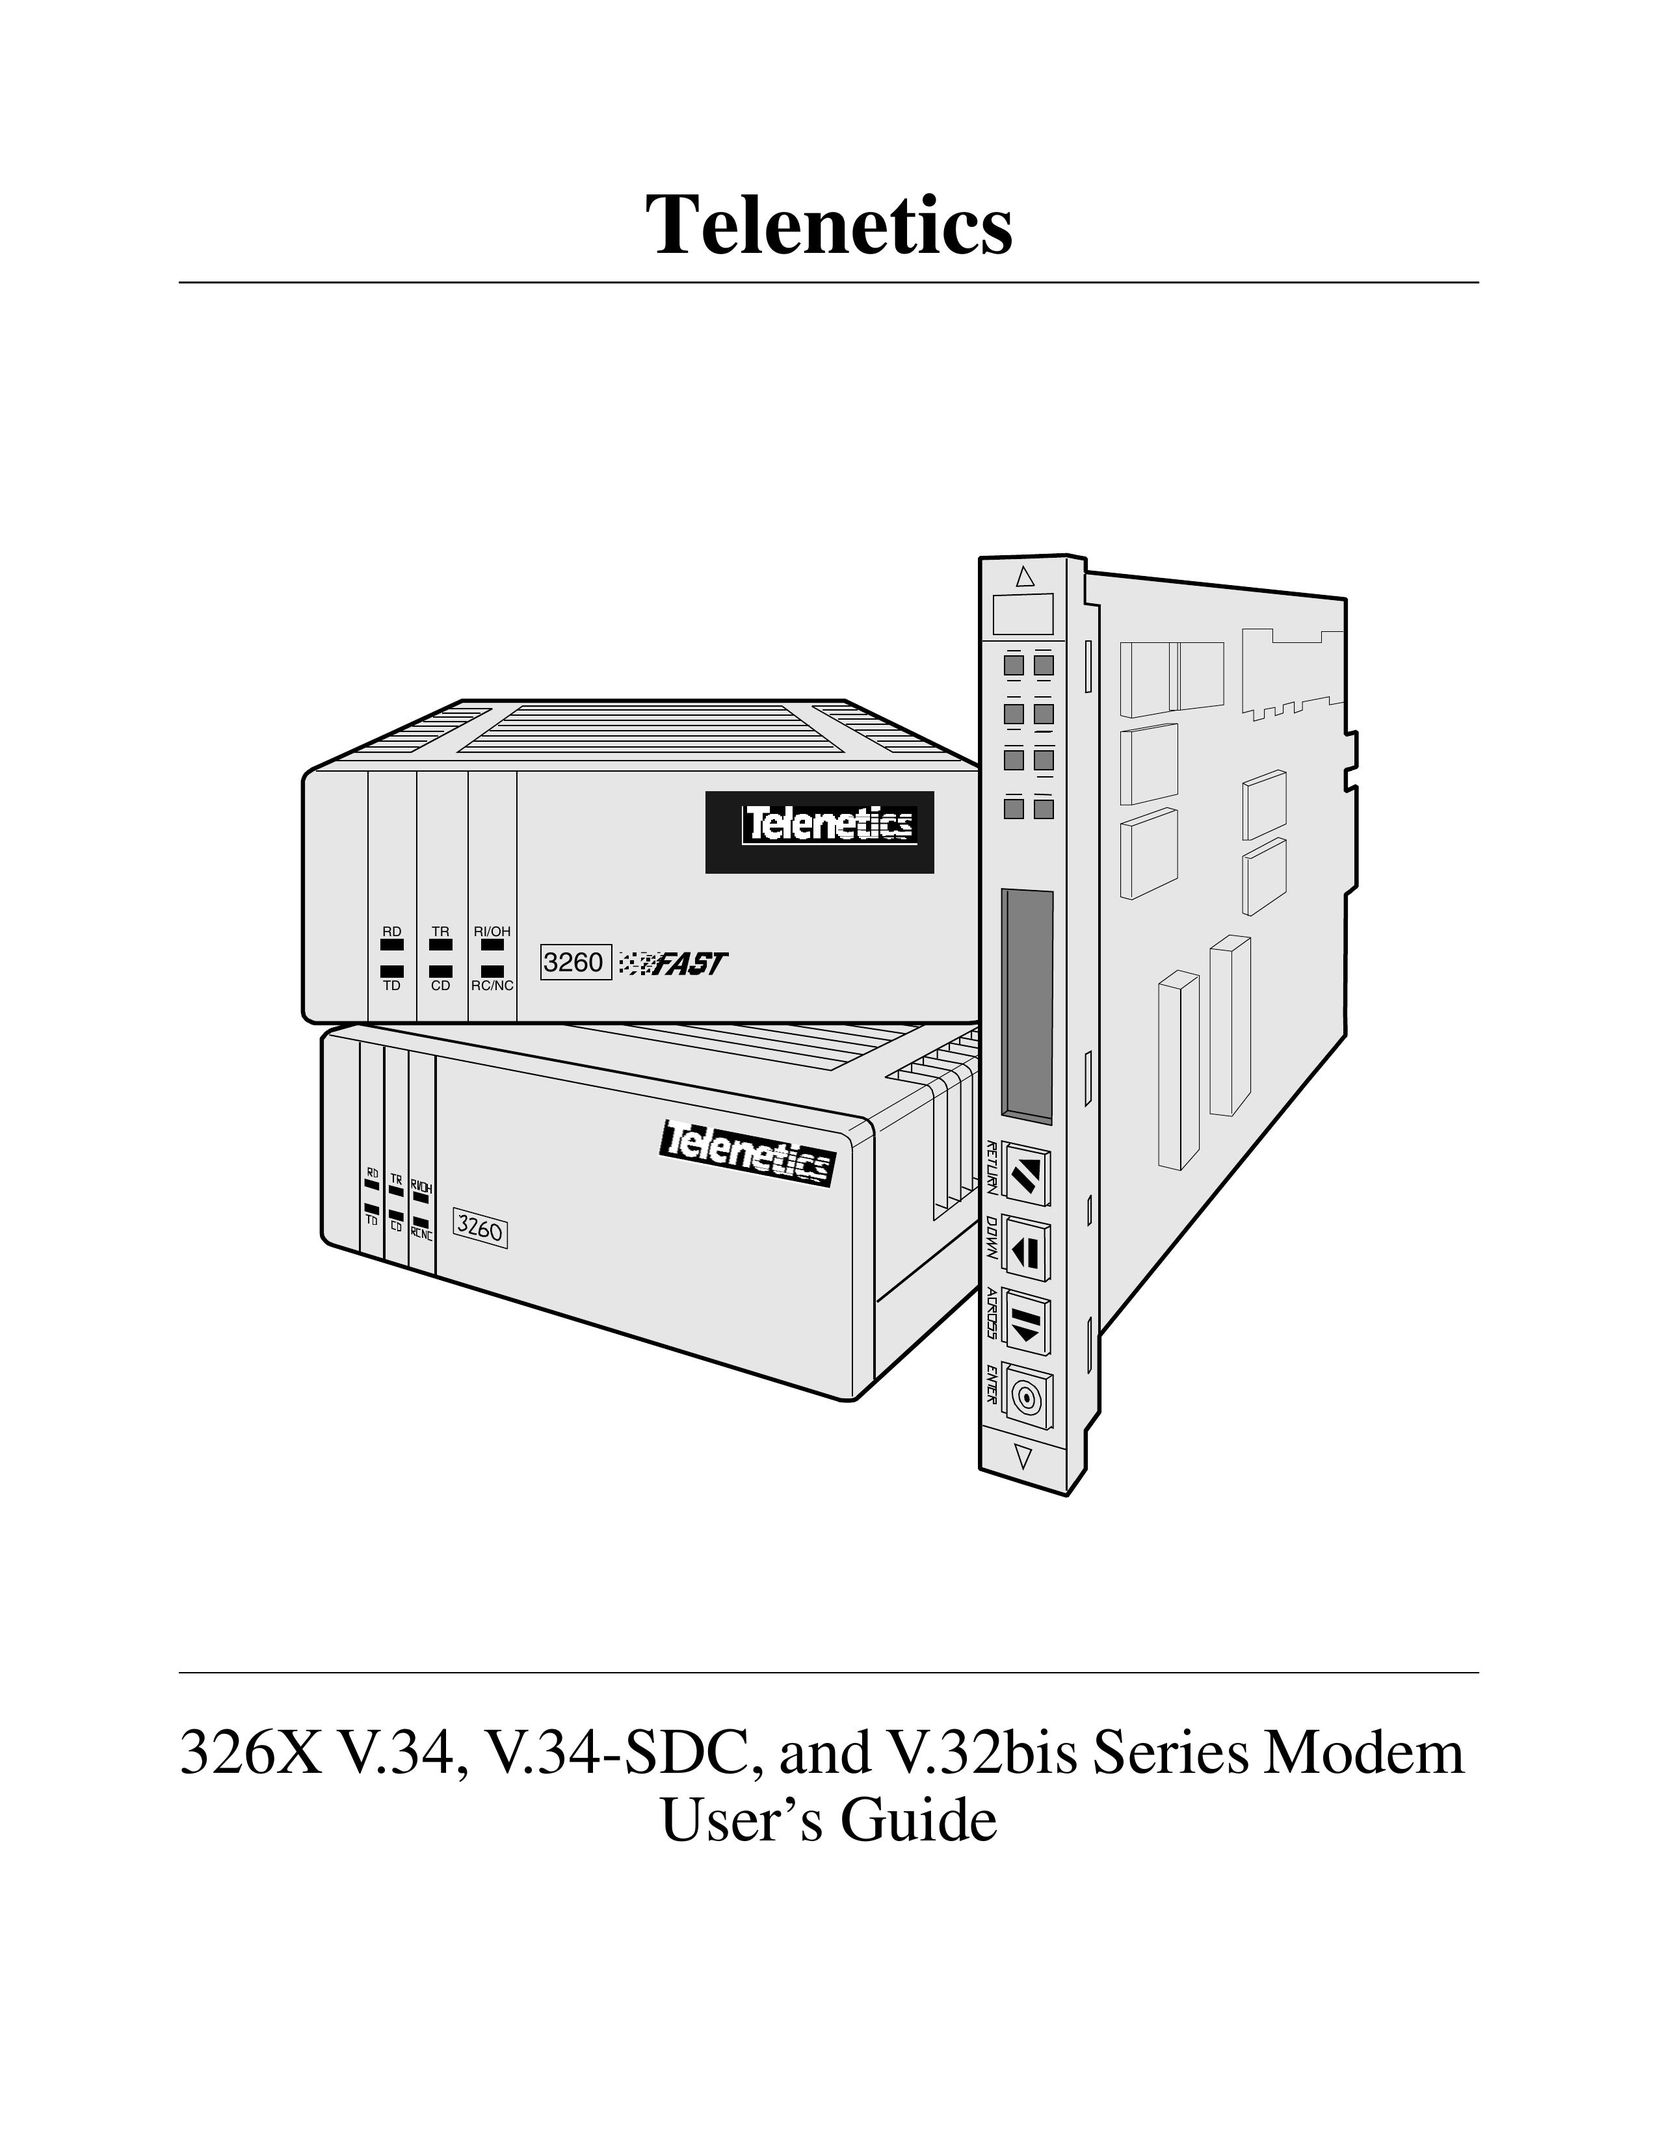 Telenetics V.34-SDC Network Router User Manual